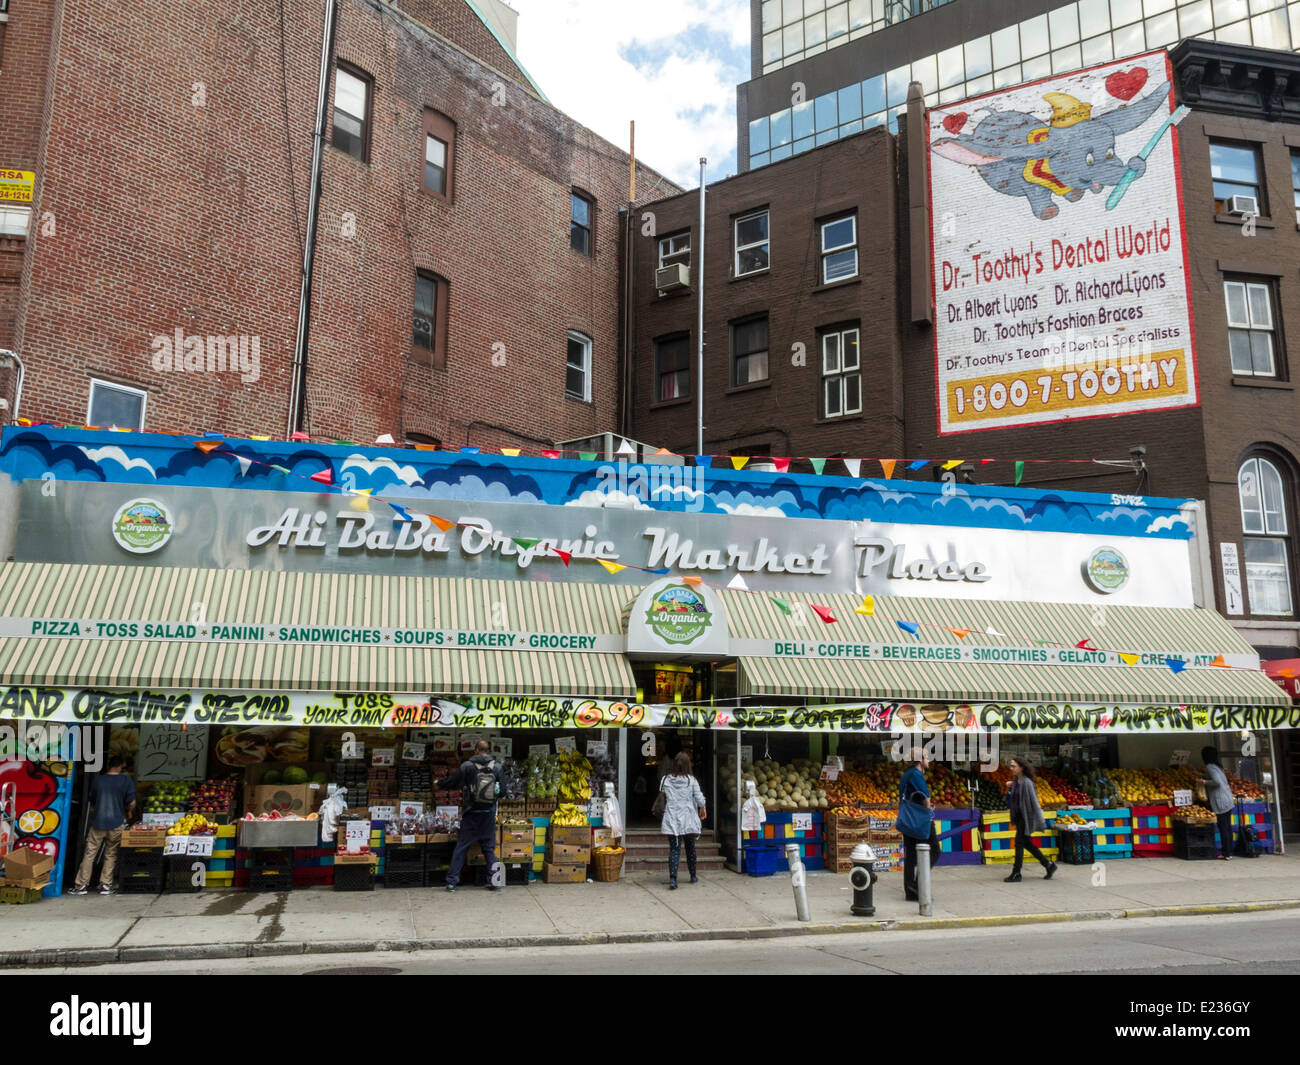 Ali Baba Organic Market Place, Chinatown, NYC, STATI UNITI D'AMERICA Foto Stock